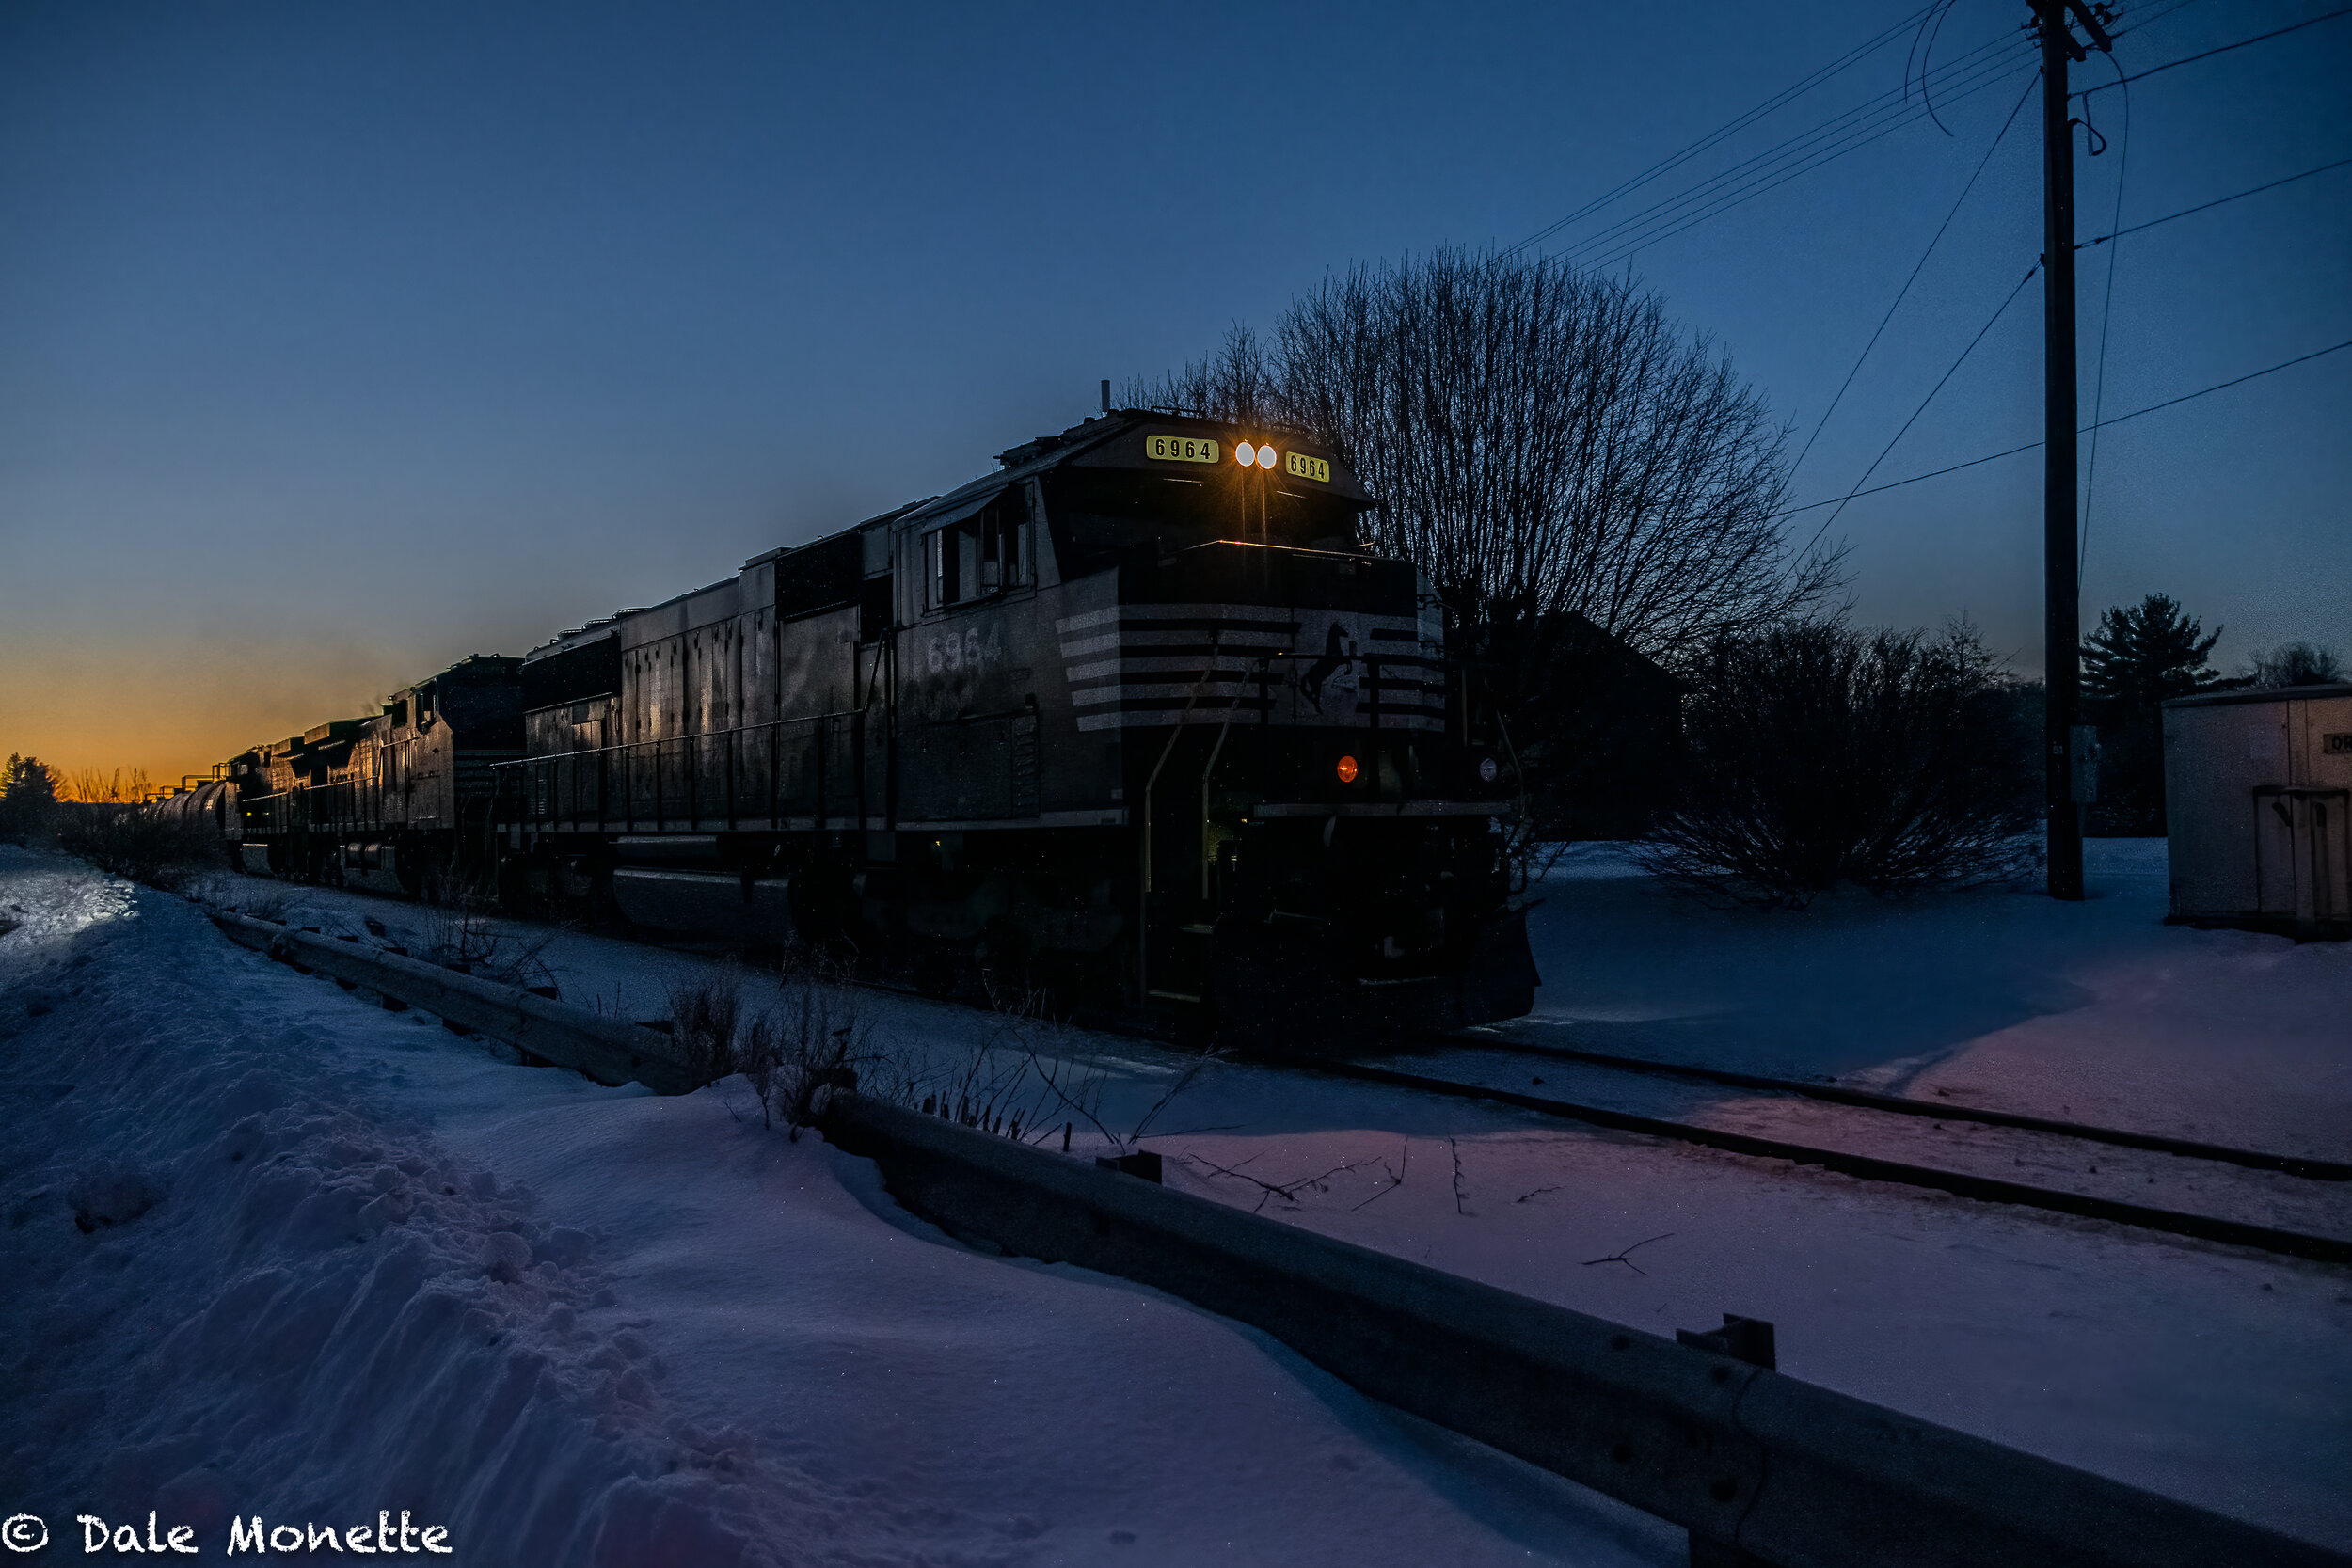   A Pan Am freight train creeps thru Orange Ma. at sunrise on February 12, 2021.  